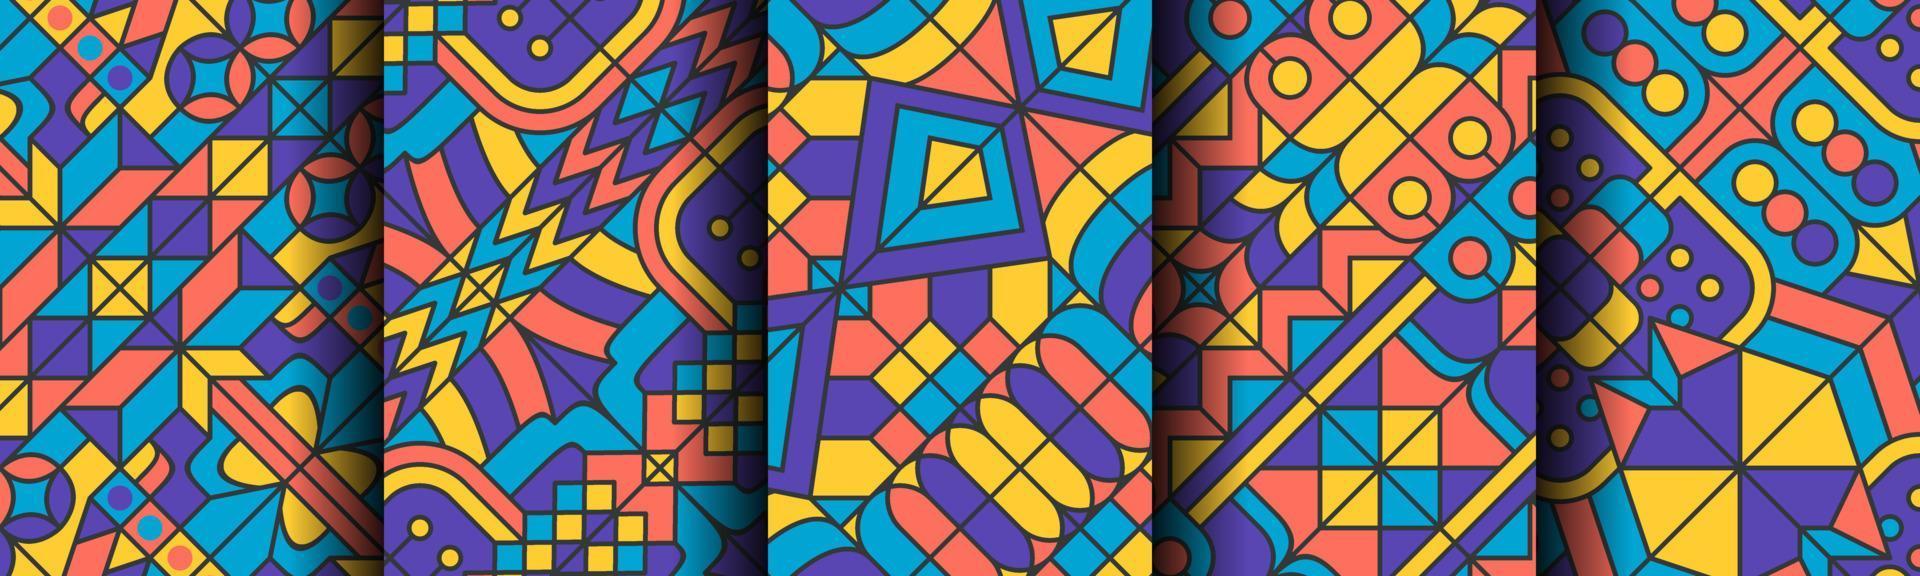 conjunto de paquete de fondo de patrón abstracto colorido clásico vector